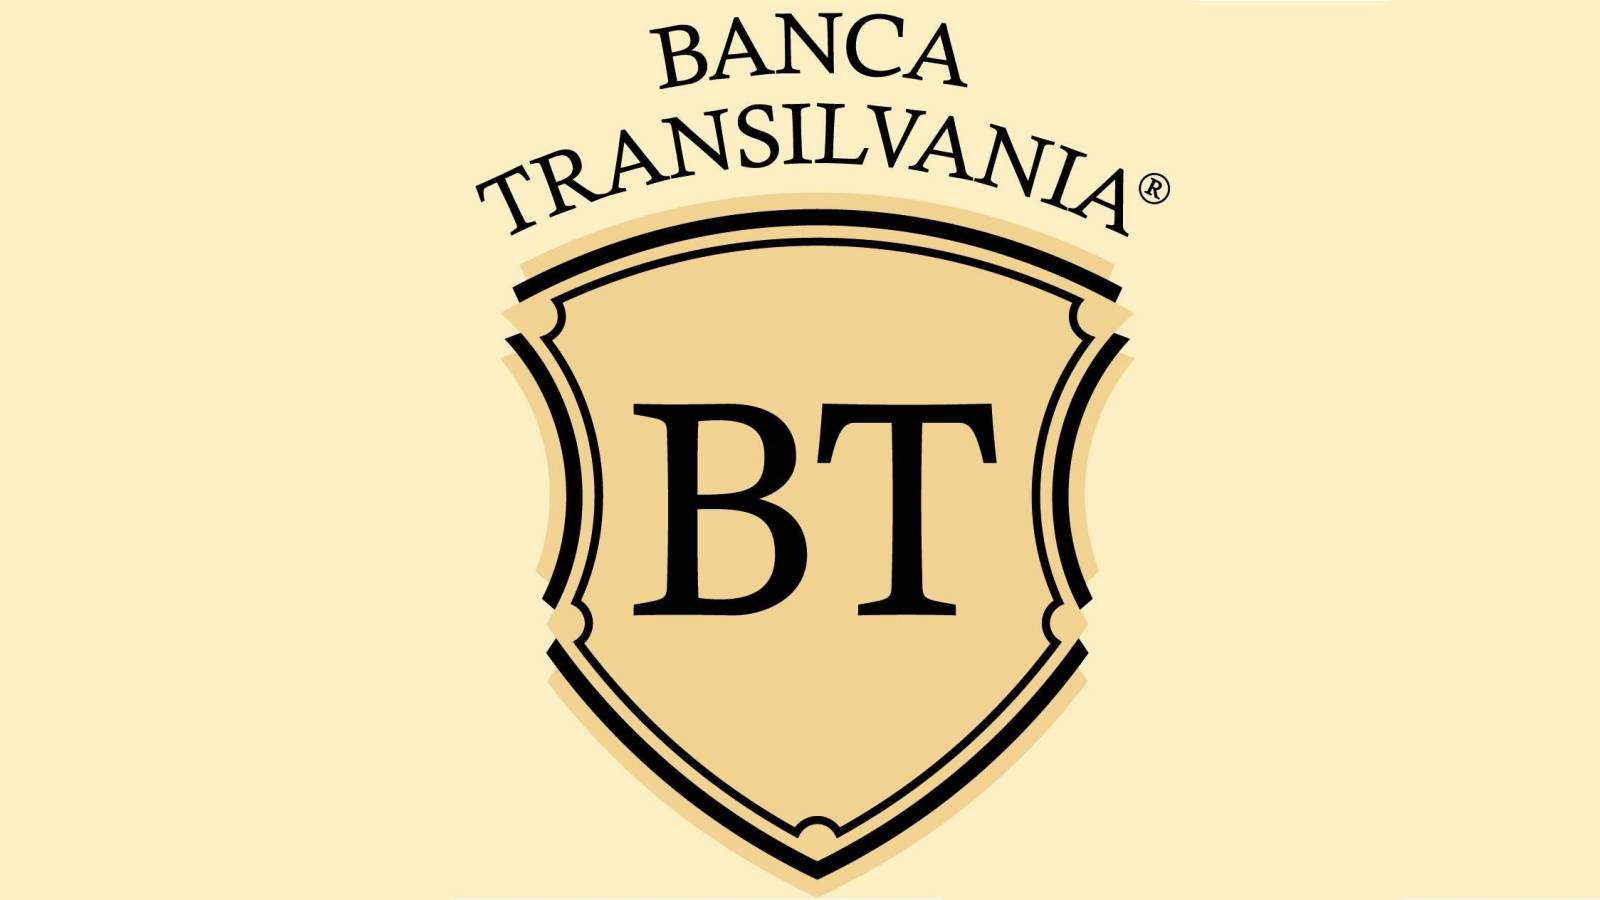 BANCA Transilvania 2 Informari Oficiale ULTIM MOMENT Vizeaza Clientii Romania